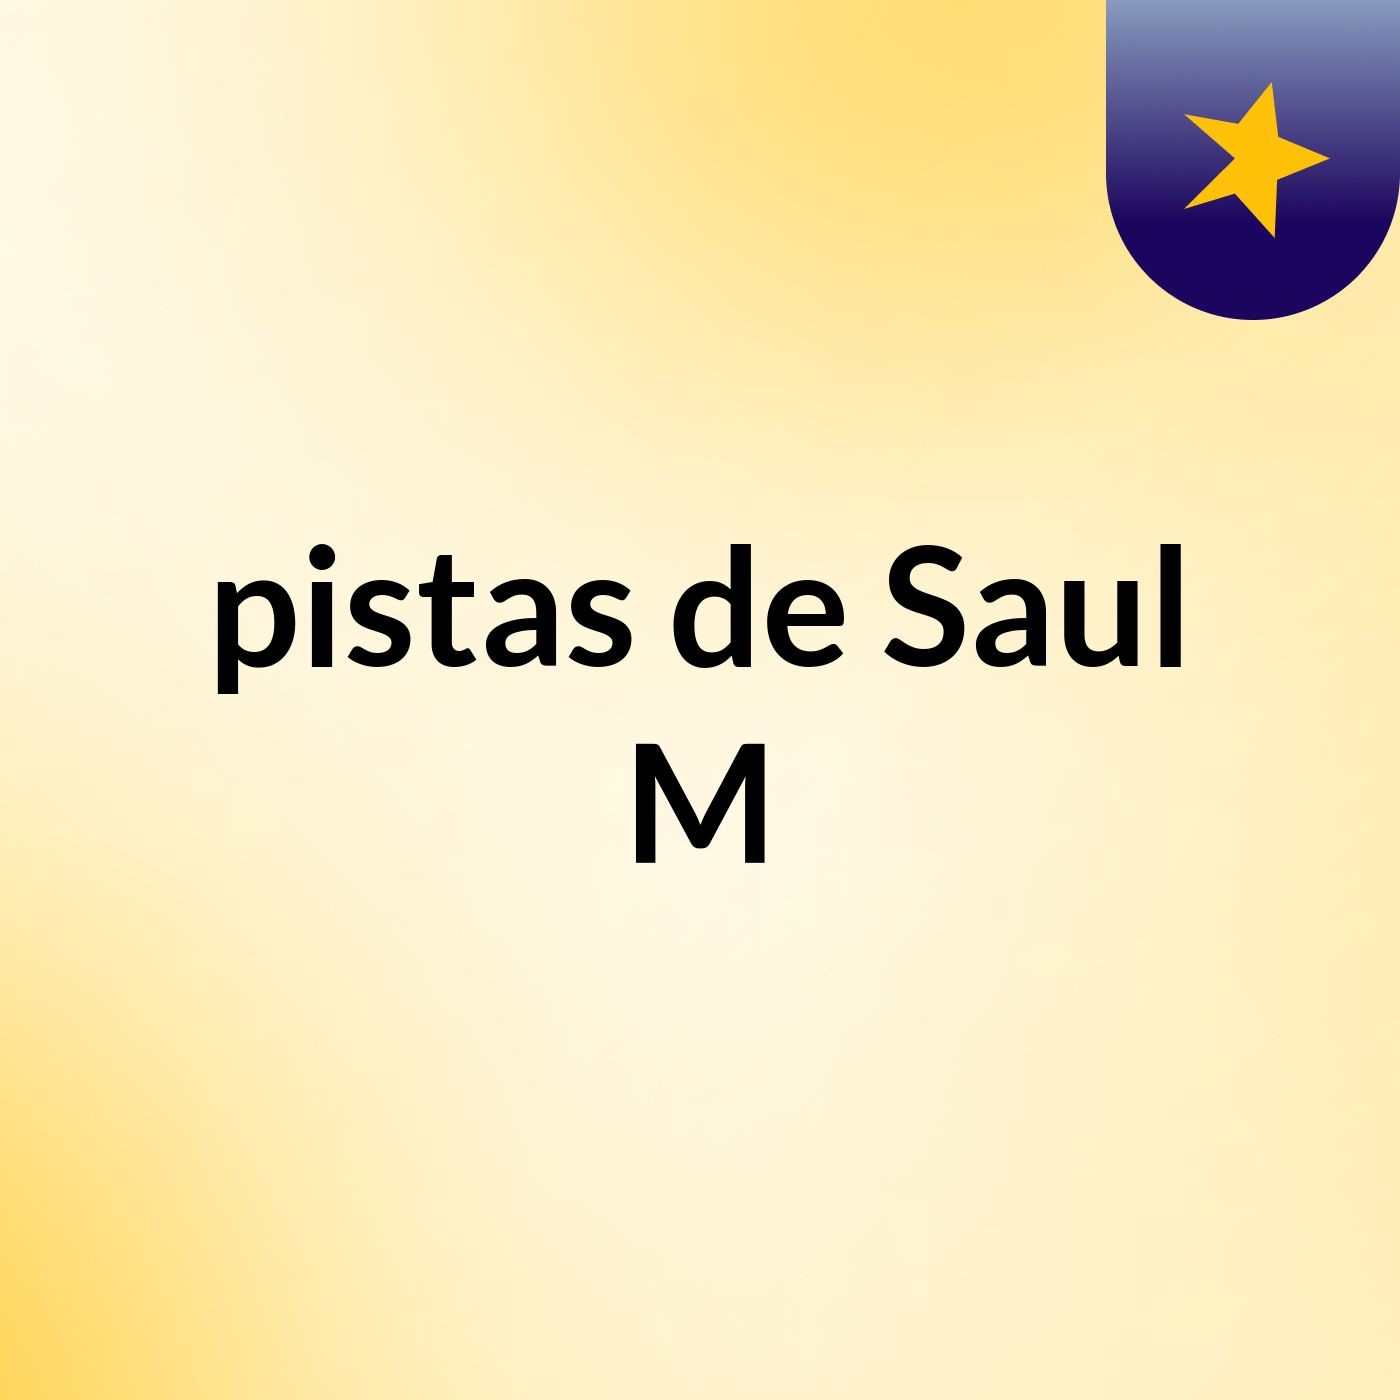 pistas de Saul M